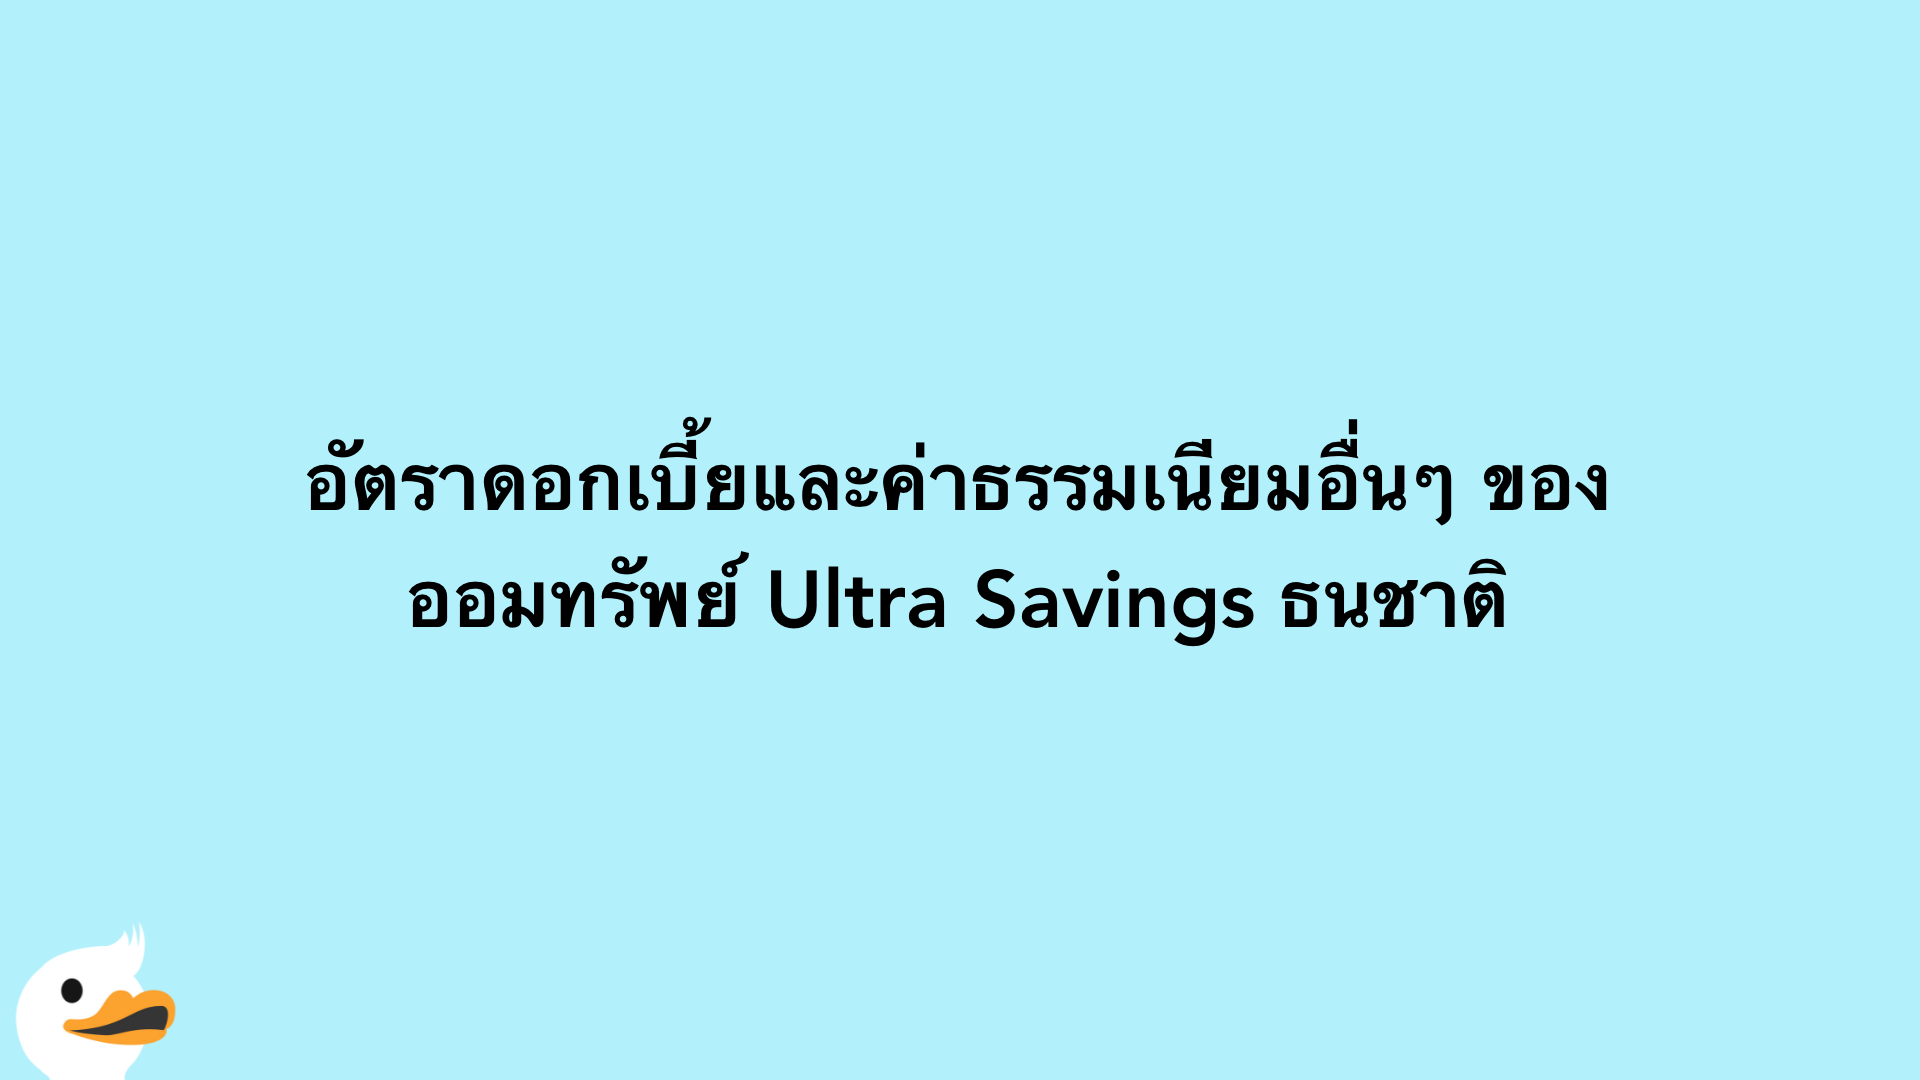 อัตราดอกเบี้ยและค่าธรรมเนียมอื่นๆ ของ ออมทรัพย์ Ultra Savings ธนชาติ